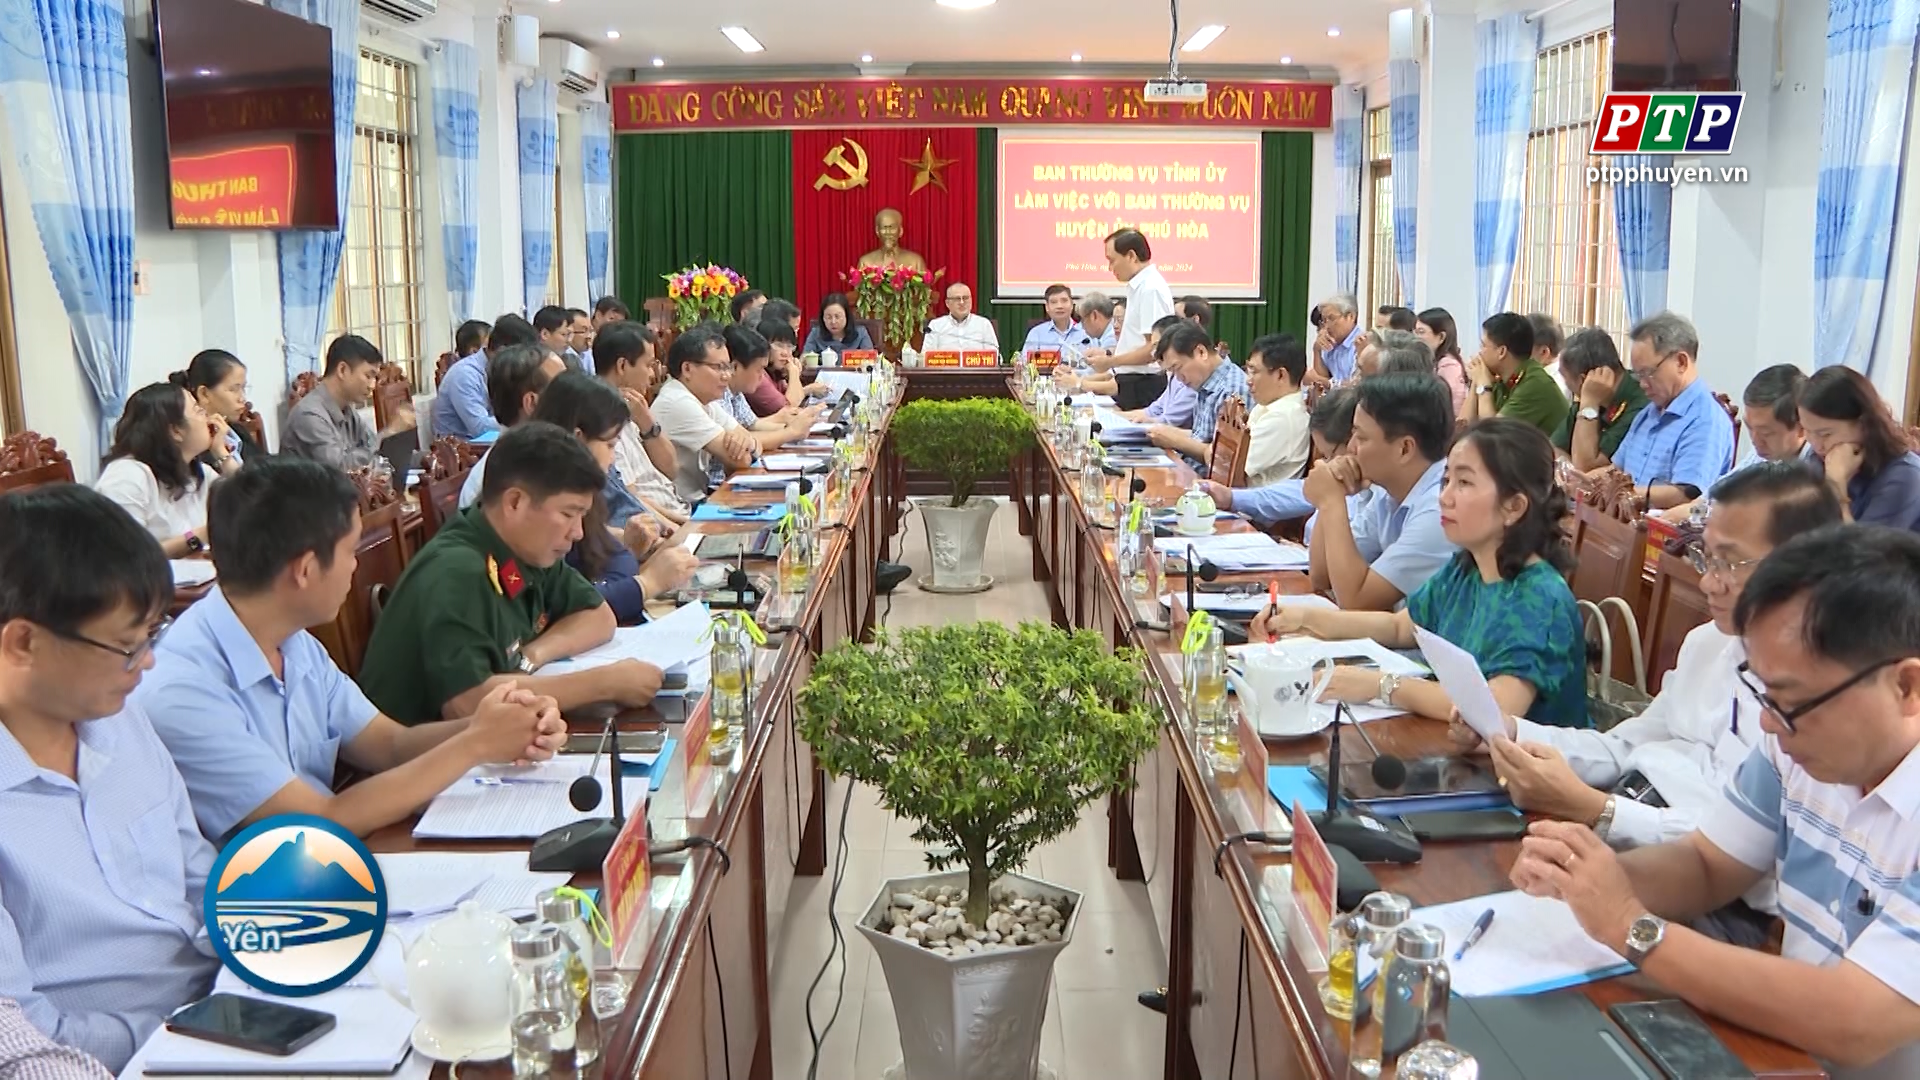 Phú Hòa cần chú trọng phát triển nông nghiệp kết hợp du lịch để tạo đột phá